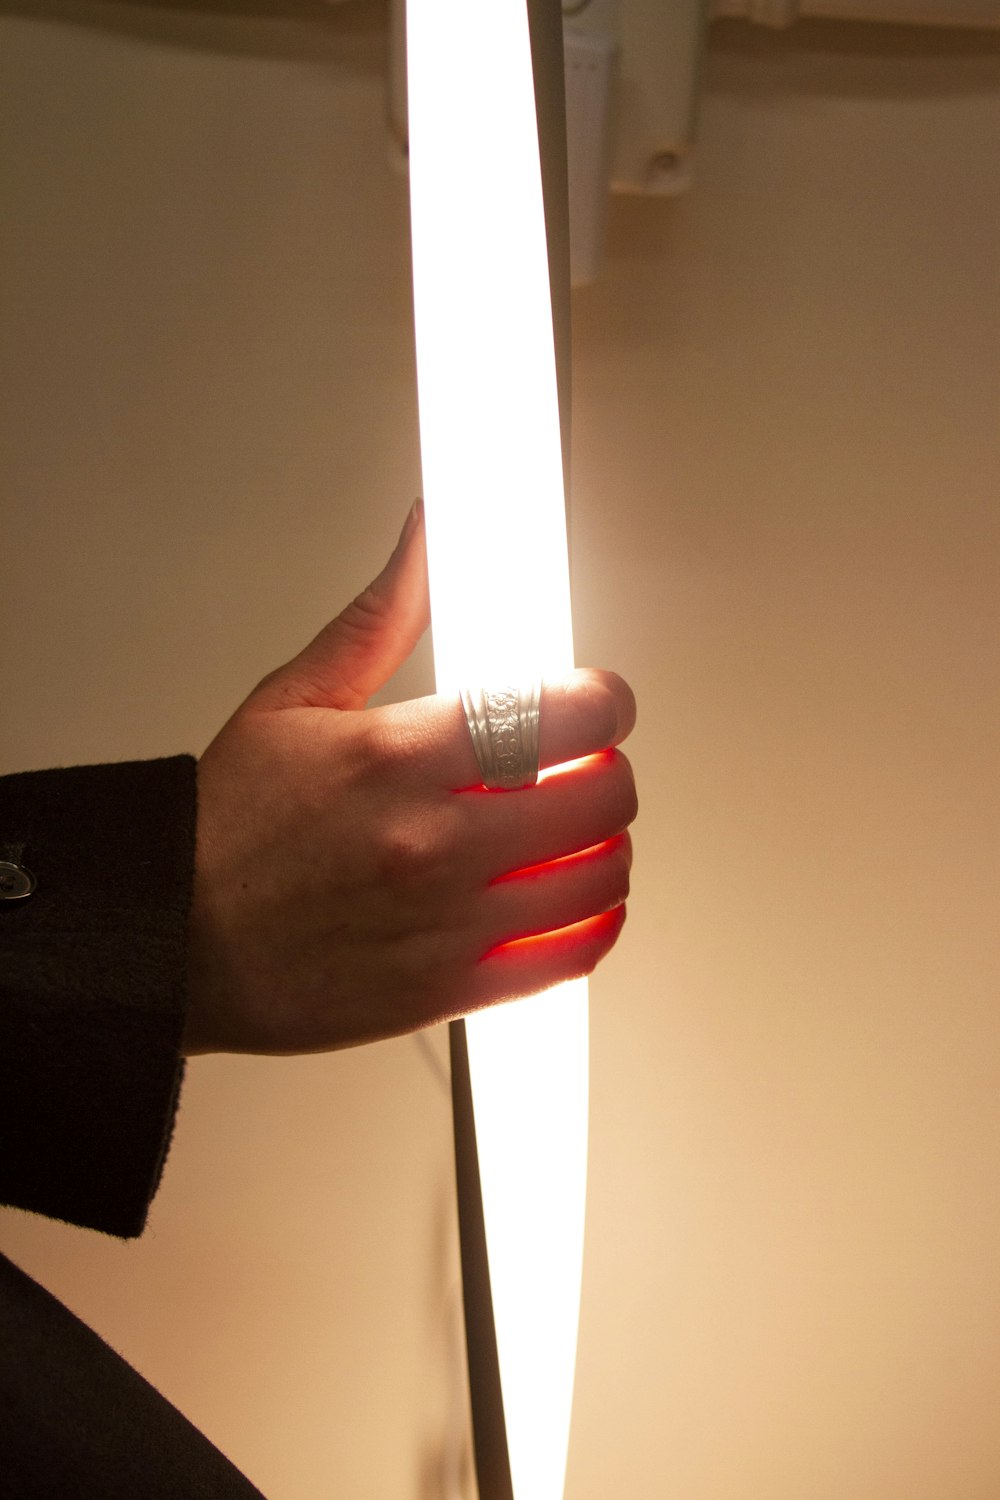 a hand holding a lit up light